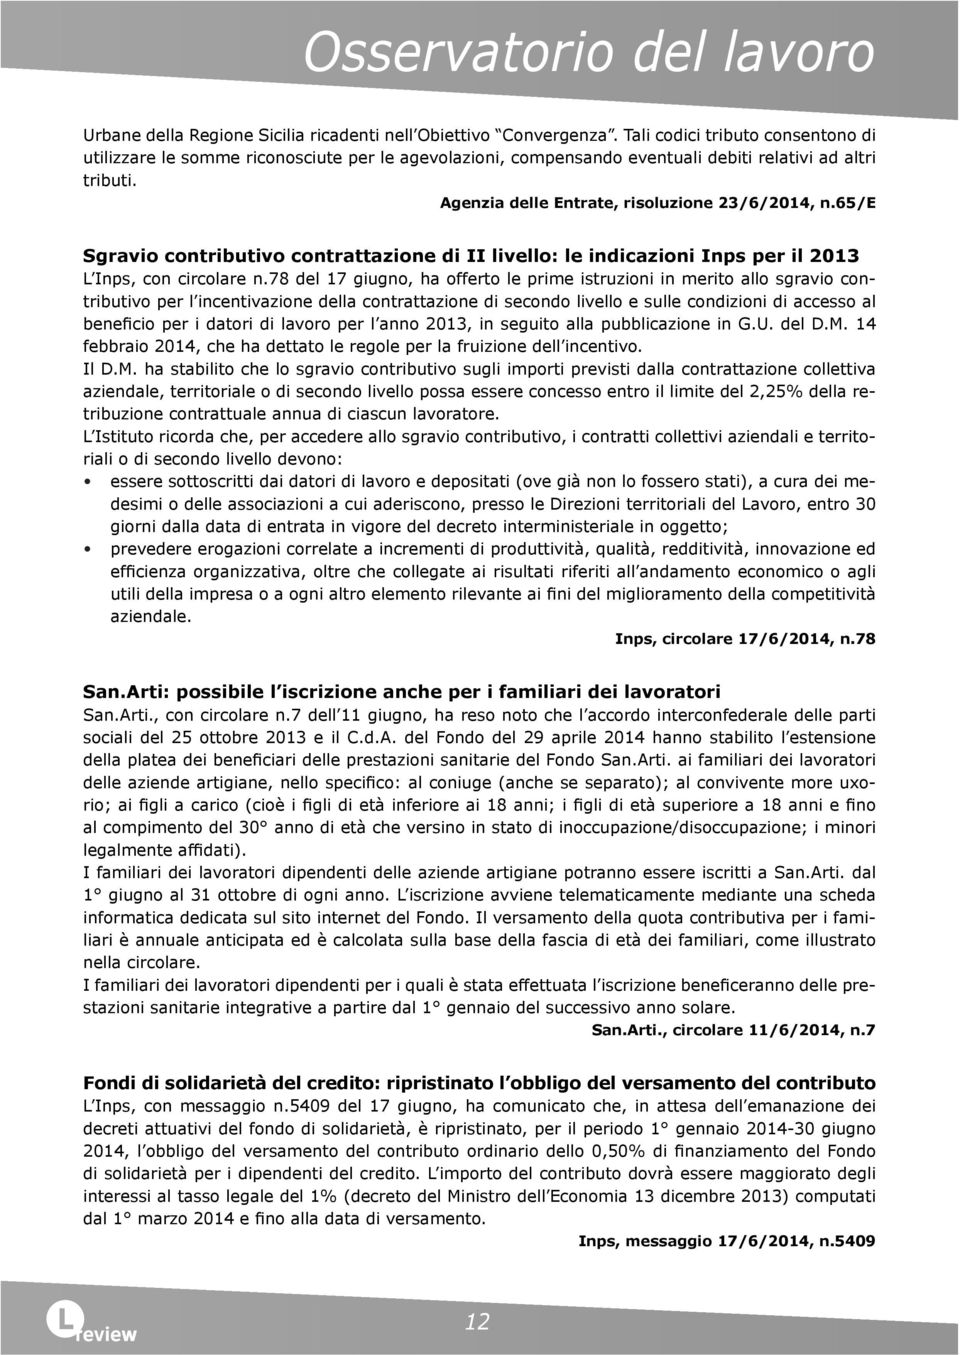 65/e Sgravio contributivo contrattazione di II livello: le indicazioni Inps per il 2013 L Inps, con circolare n.